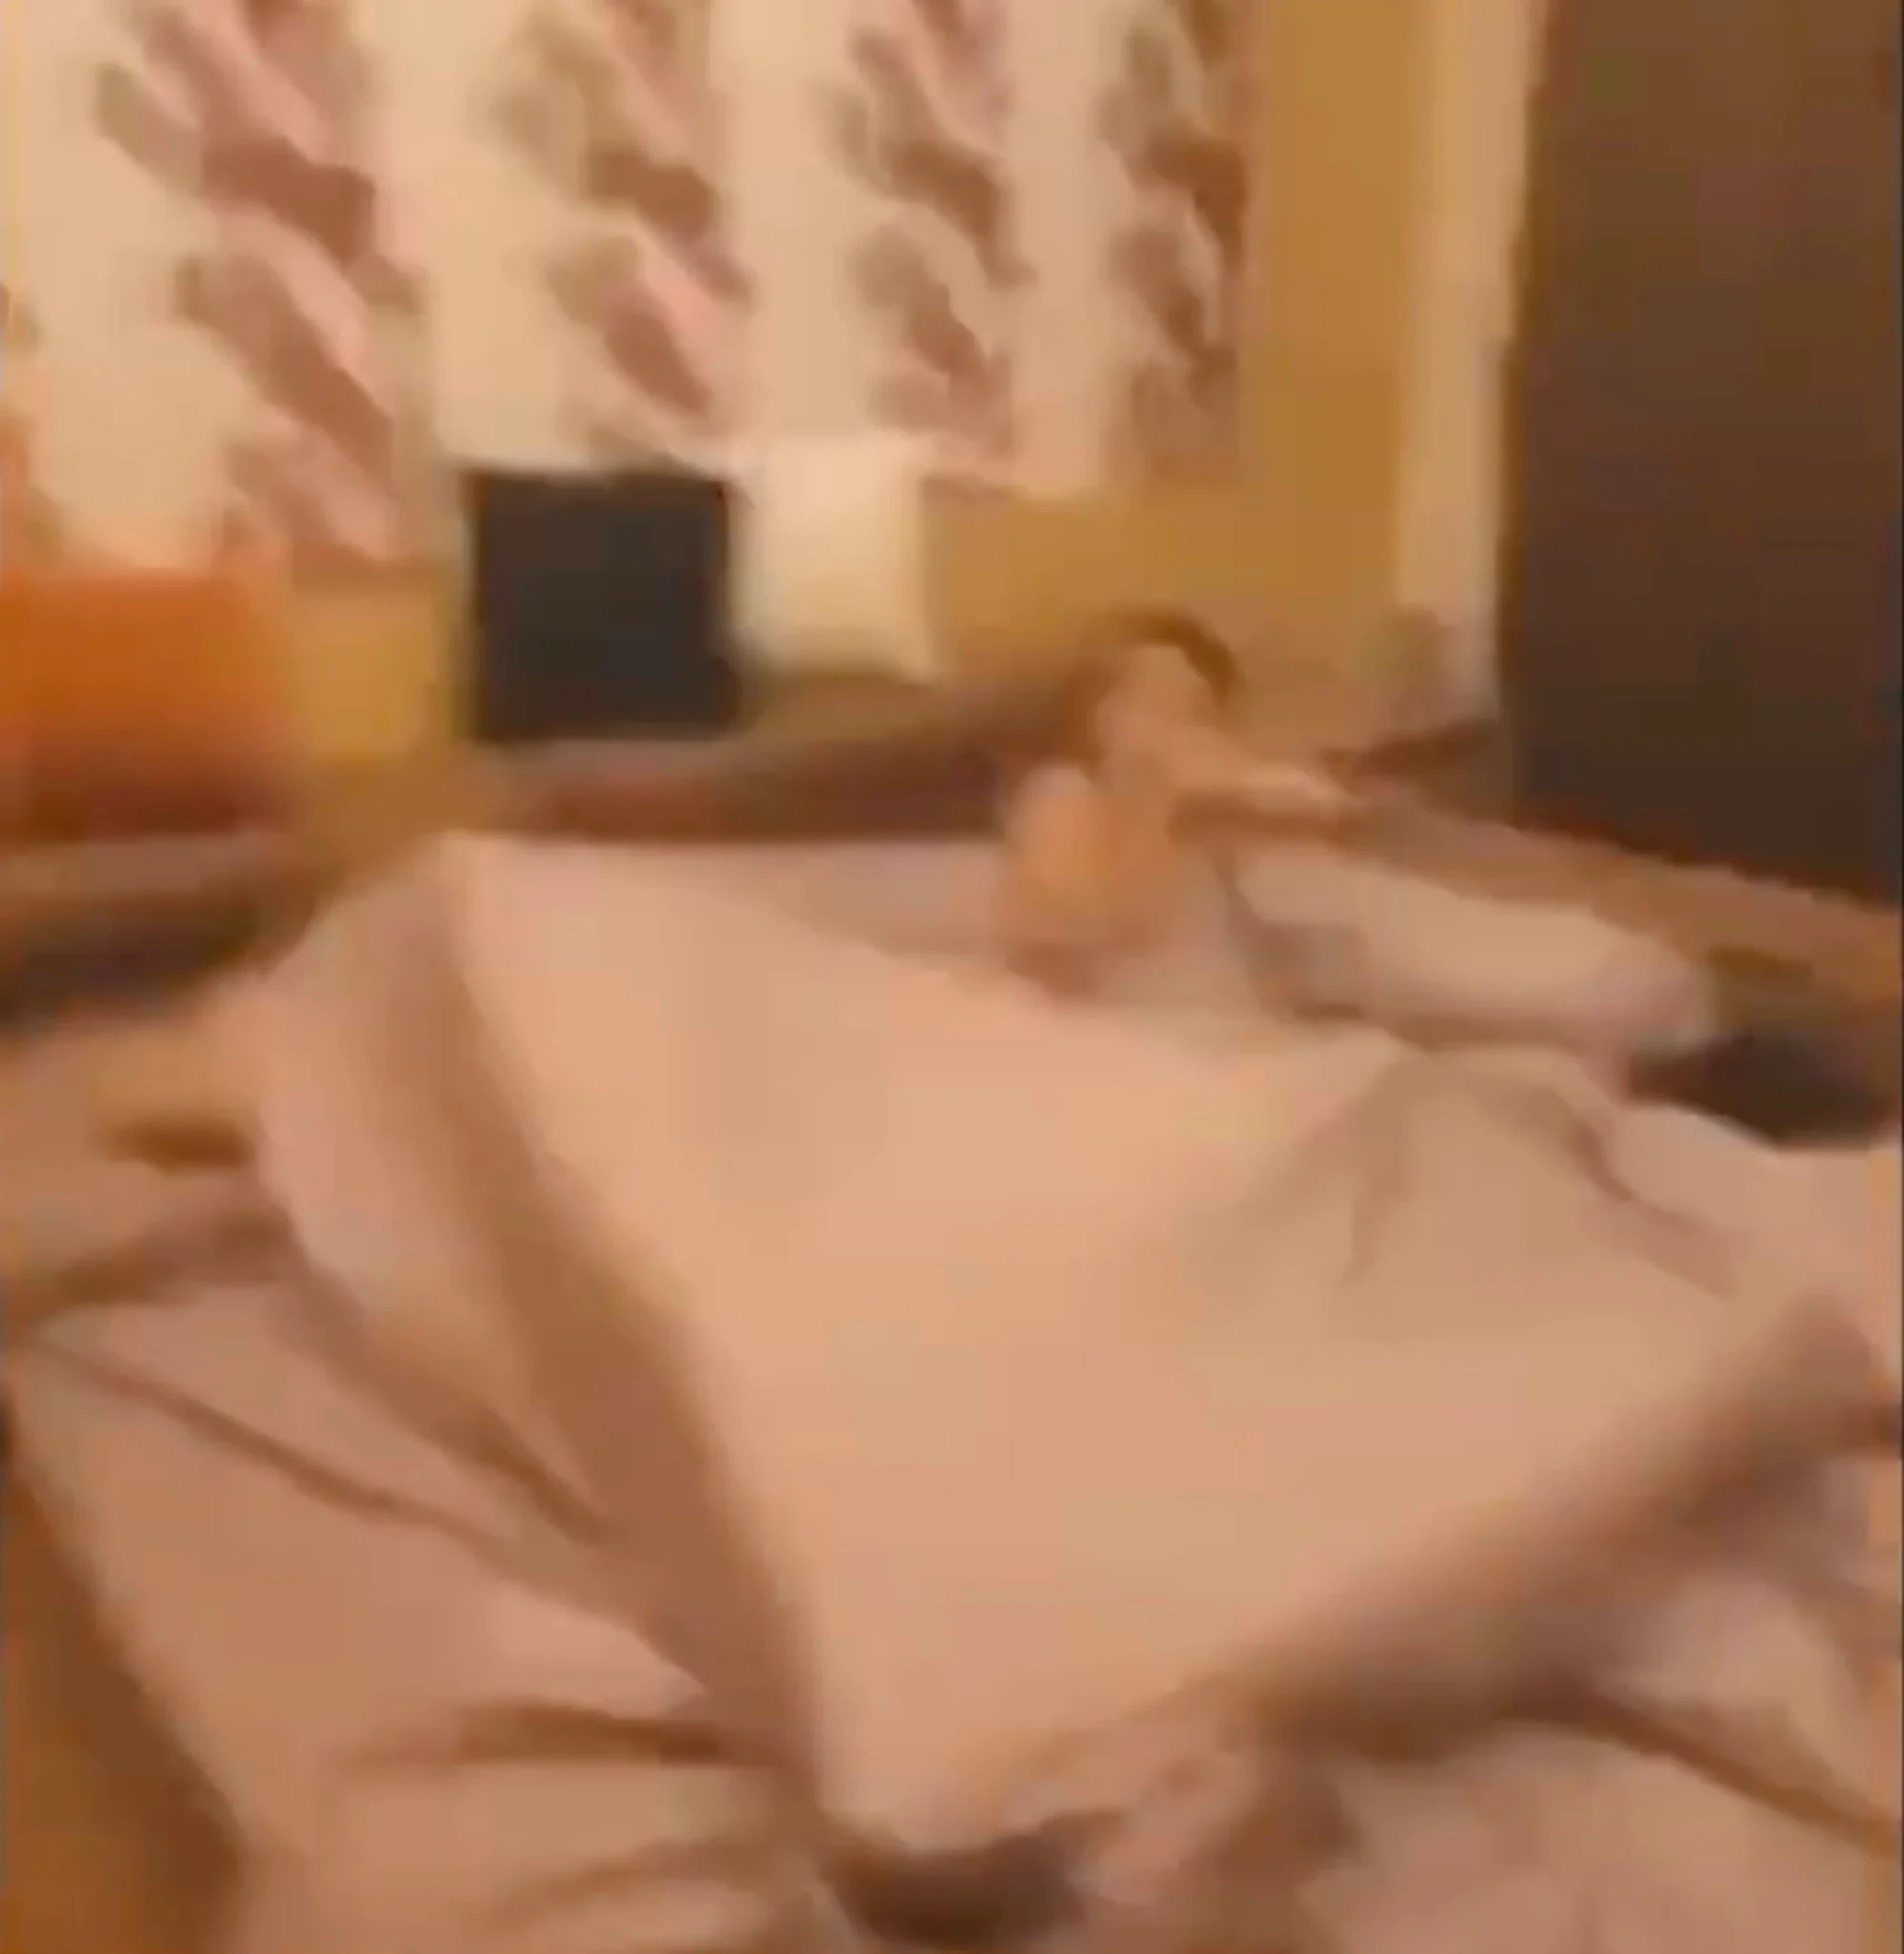 Bà Choeiwadkoh bị bắt quả tang trên giường (ảnh: SCMP)